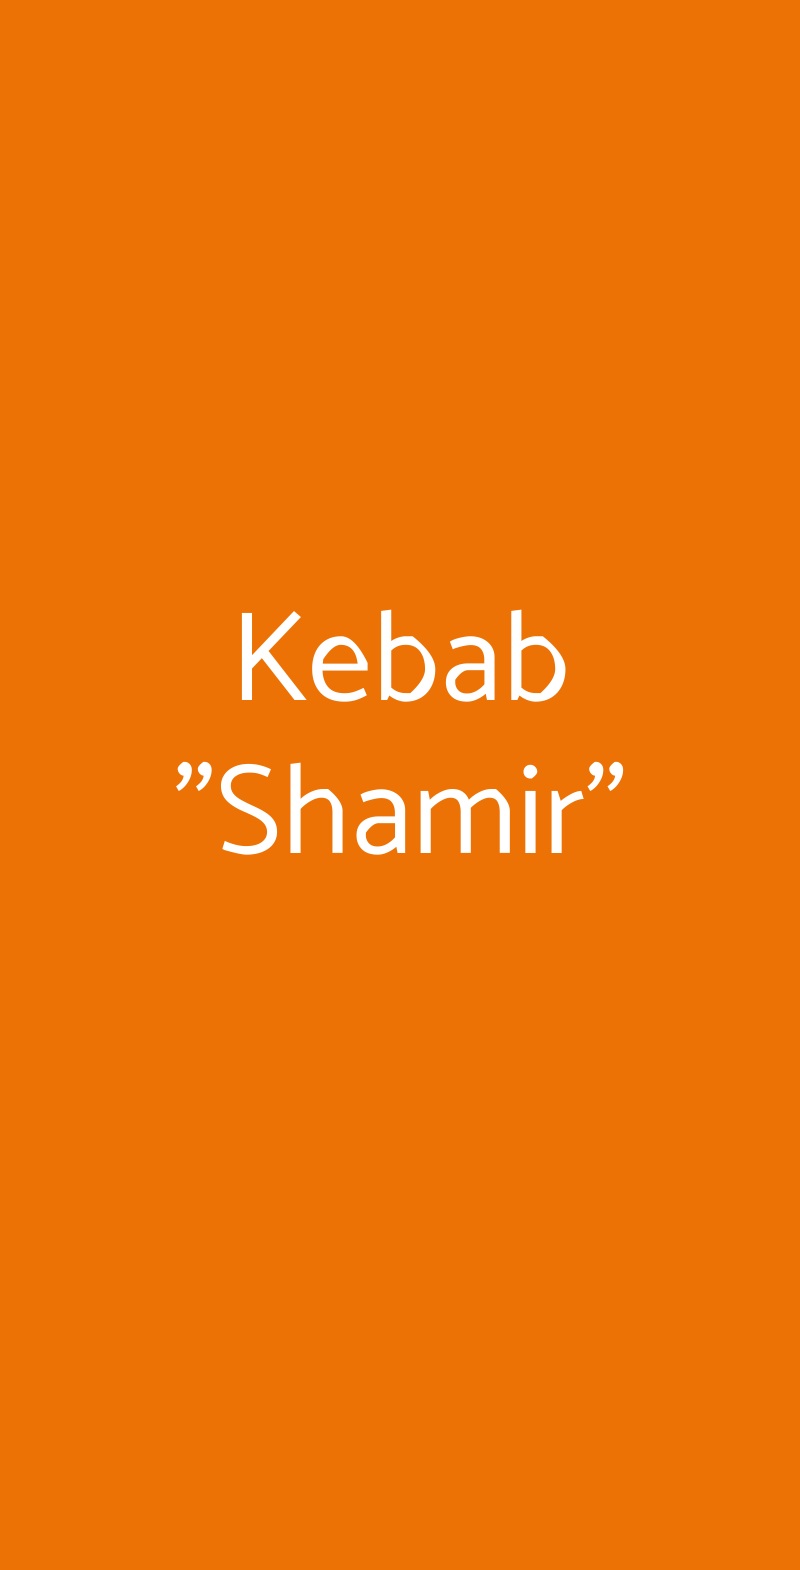 Kebab "Shamir" Verona menù 1 pagina